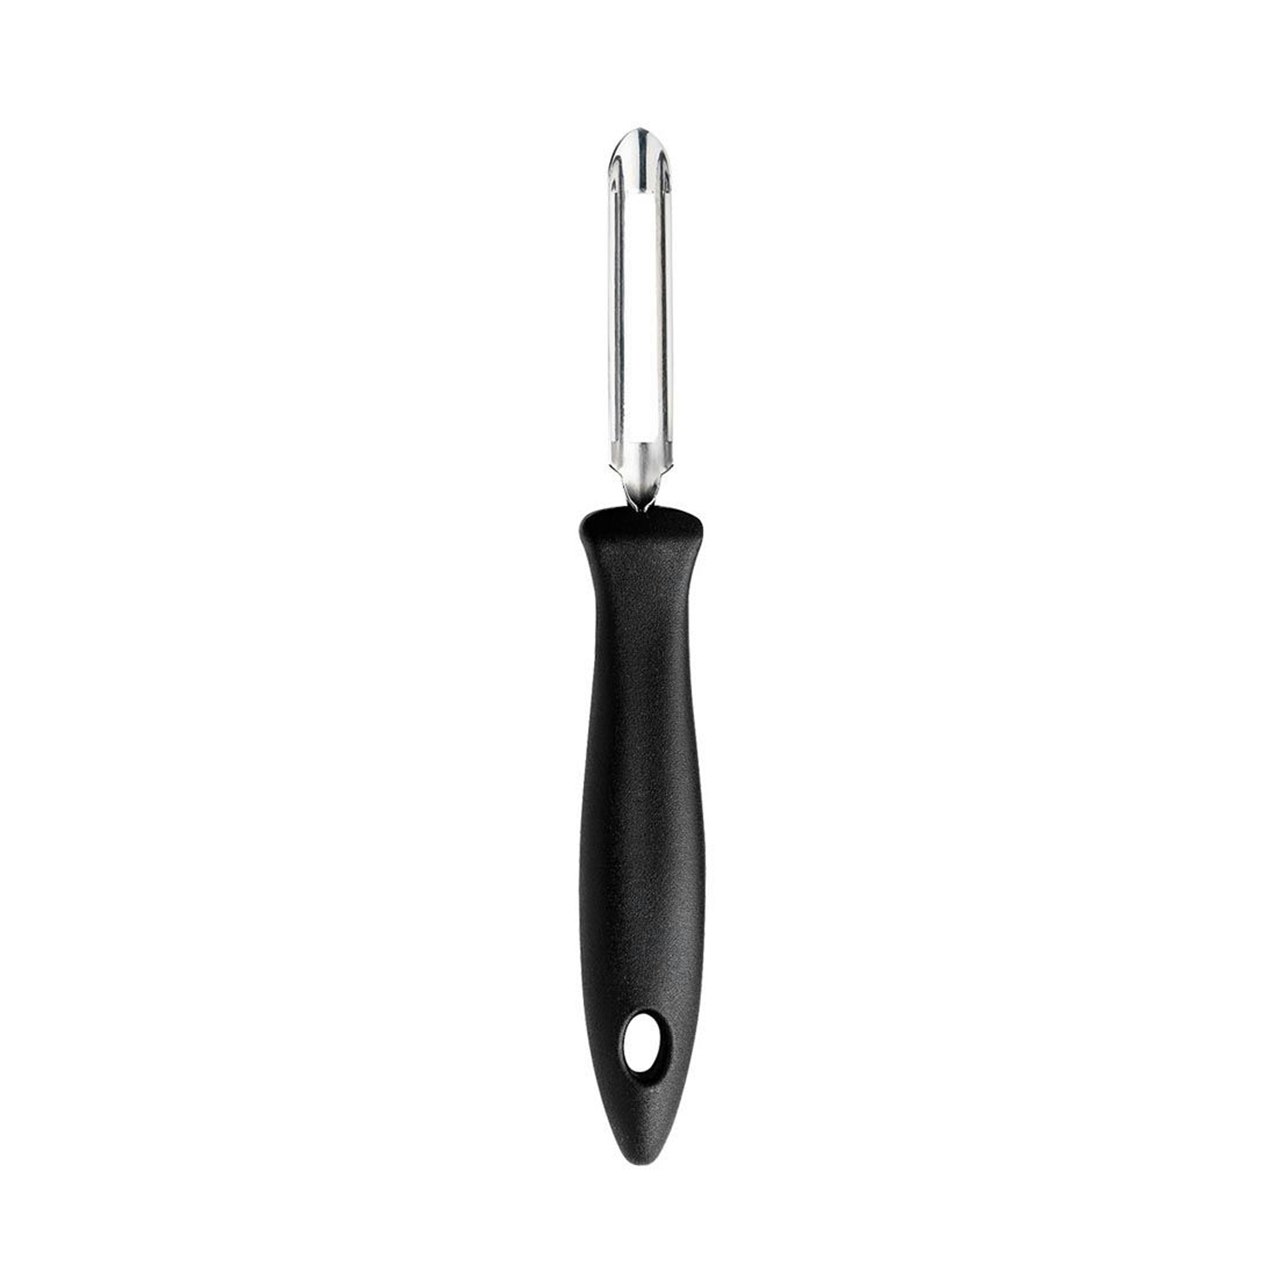 https://royaldesign.com/image/11/fiskars-essential-potato-peeler-with-movable-blade-0?w=800&quality=80